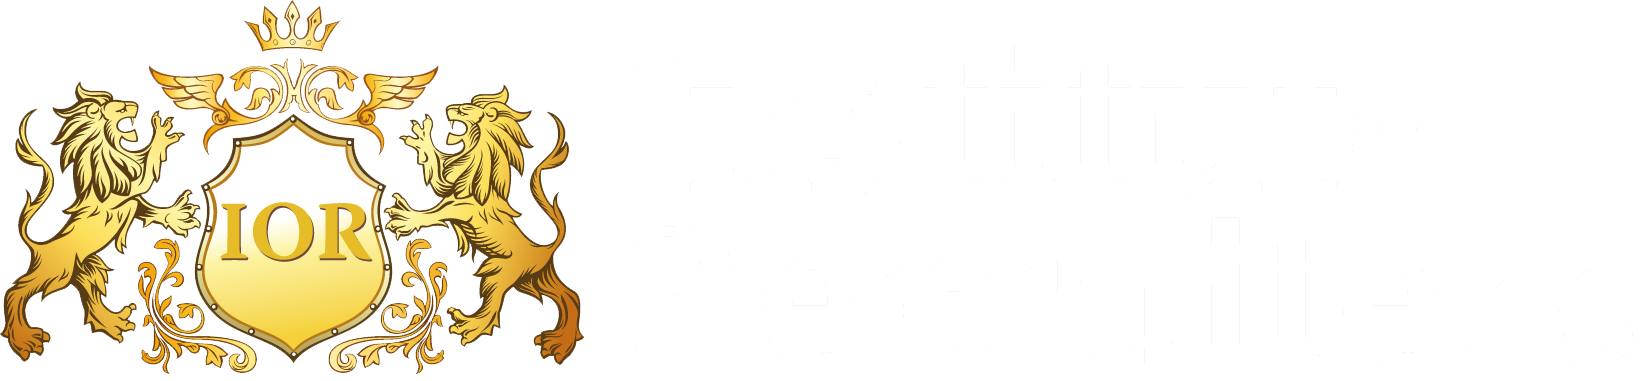 Institute of Recruiters logo